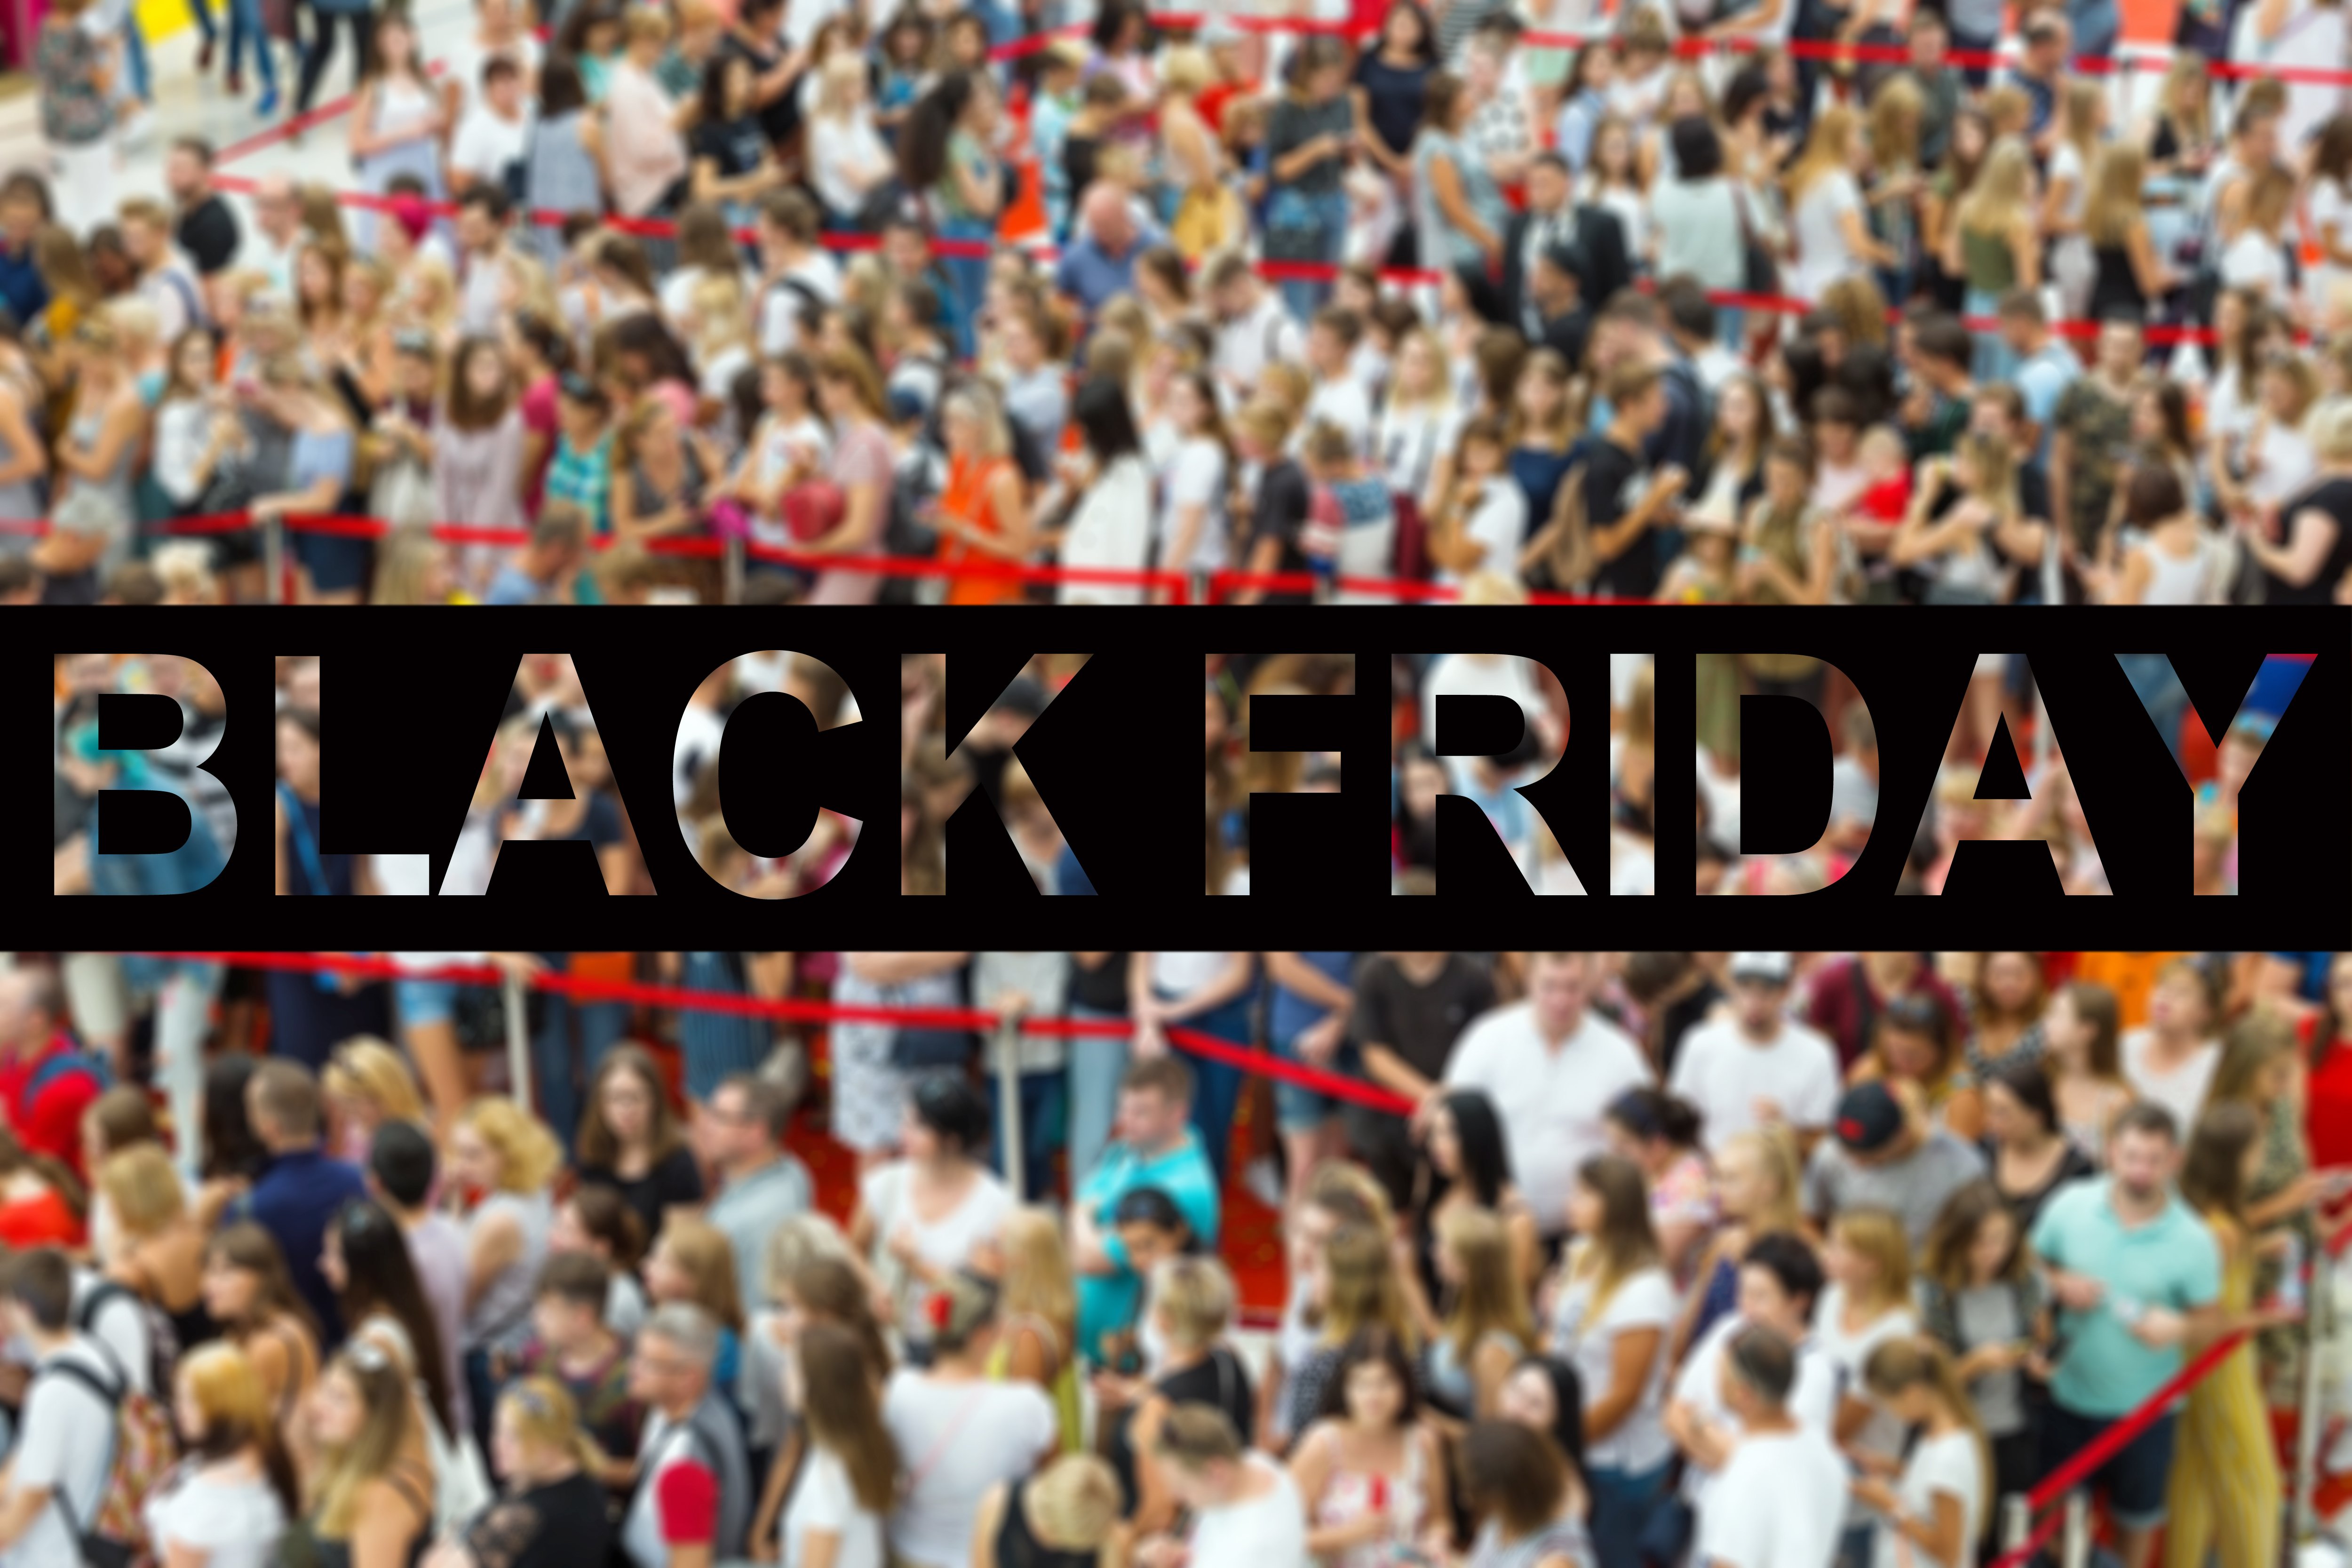 ΣΕΛΠΕ: Στα 120 εκατ. ευρώ εκτιμάται εφέτος η αγορά της Black Friday